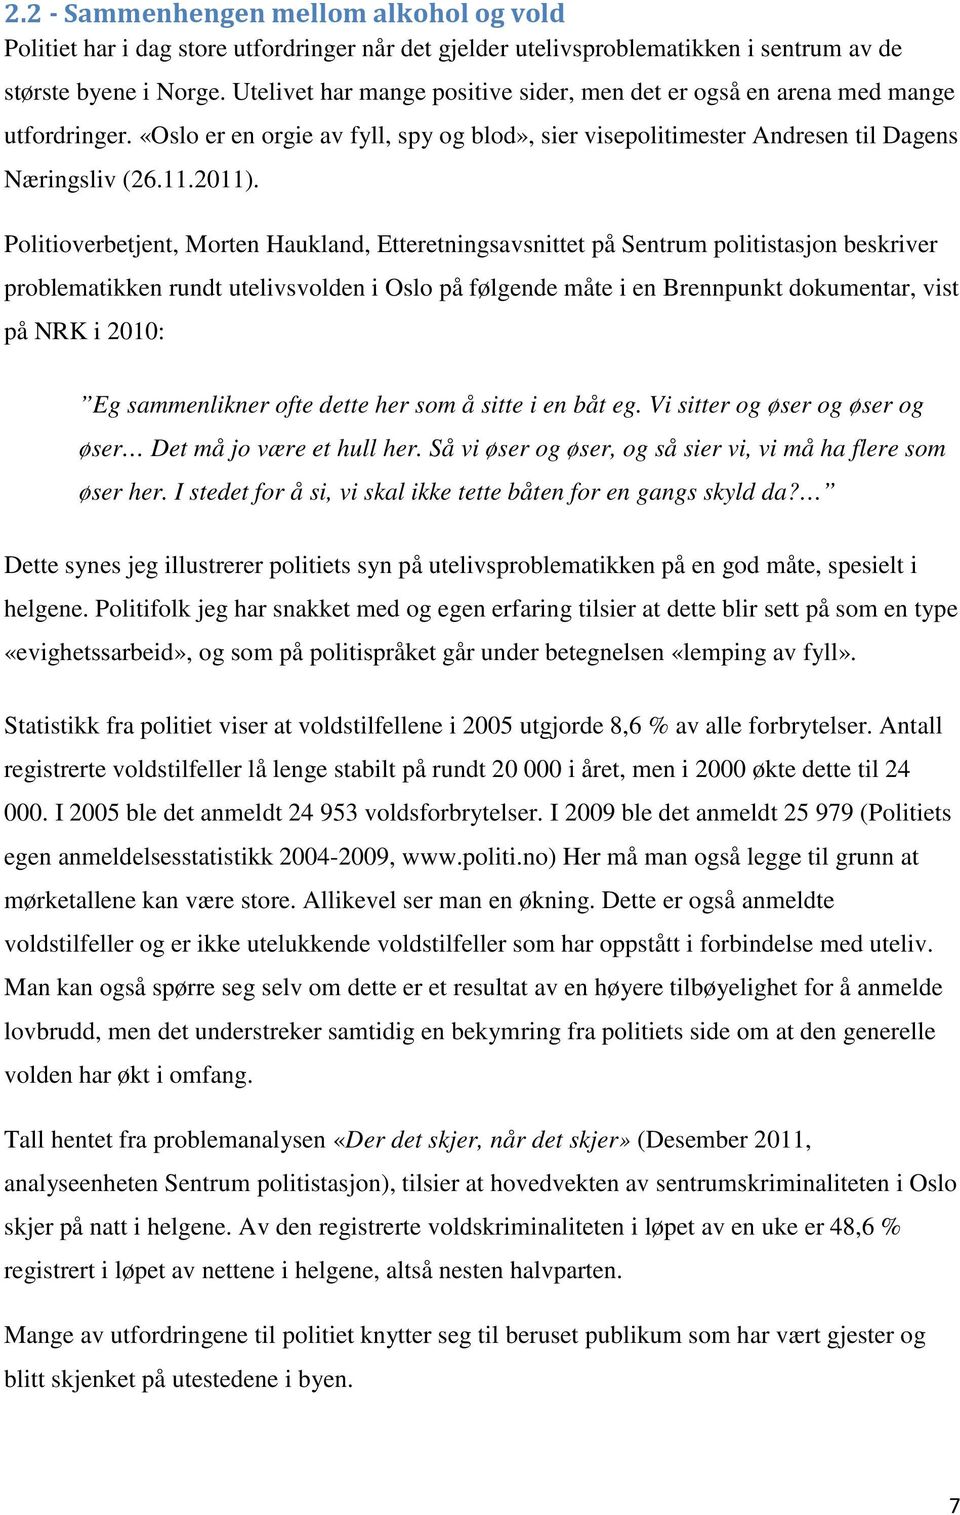 Politioverbetjent, Morten Haukland, Etteretningsavsnittet på Sentrum politistasjon beskriver problematikken rundt utelivsvolden i Oslo på følgende måte i en Brennpunkt dokumentar, vist på NRK i 2010: